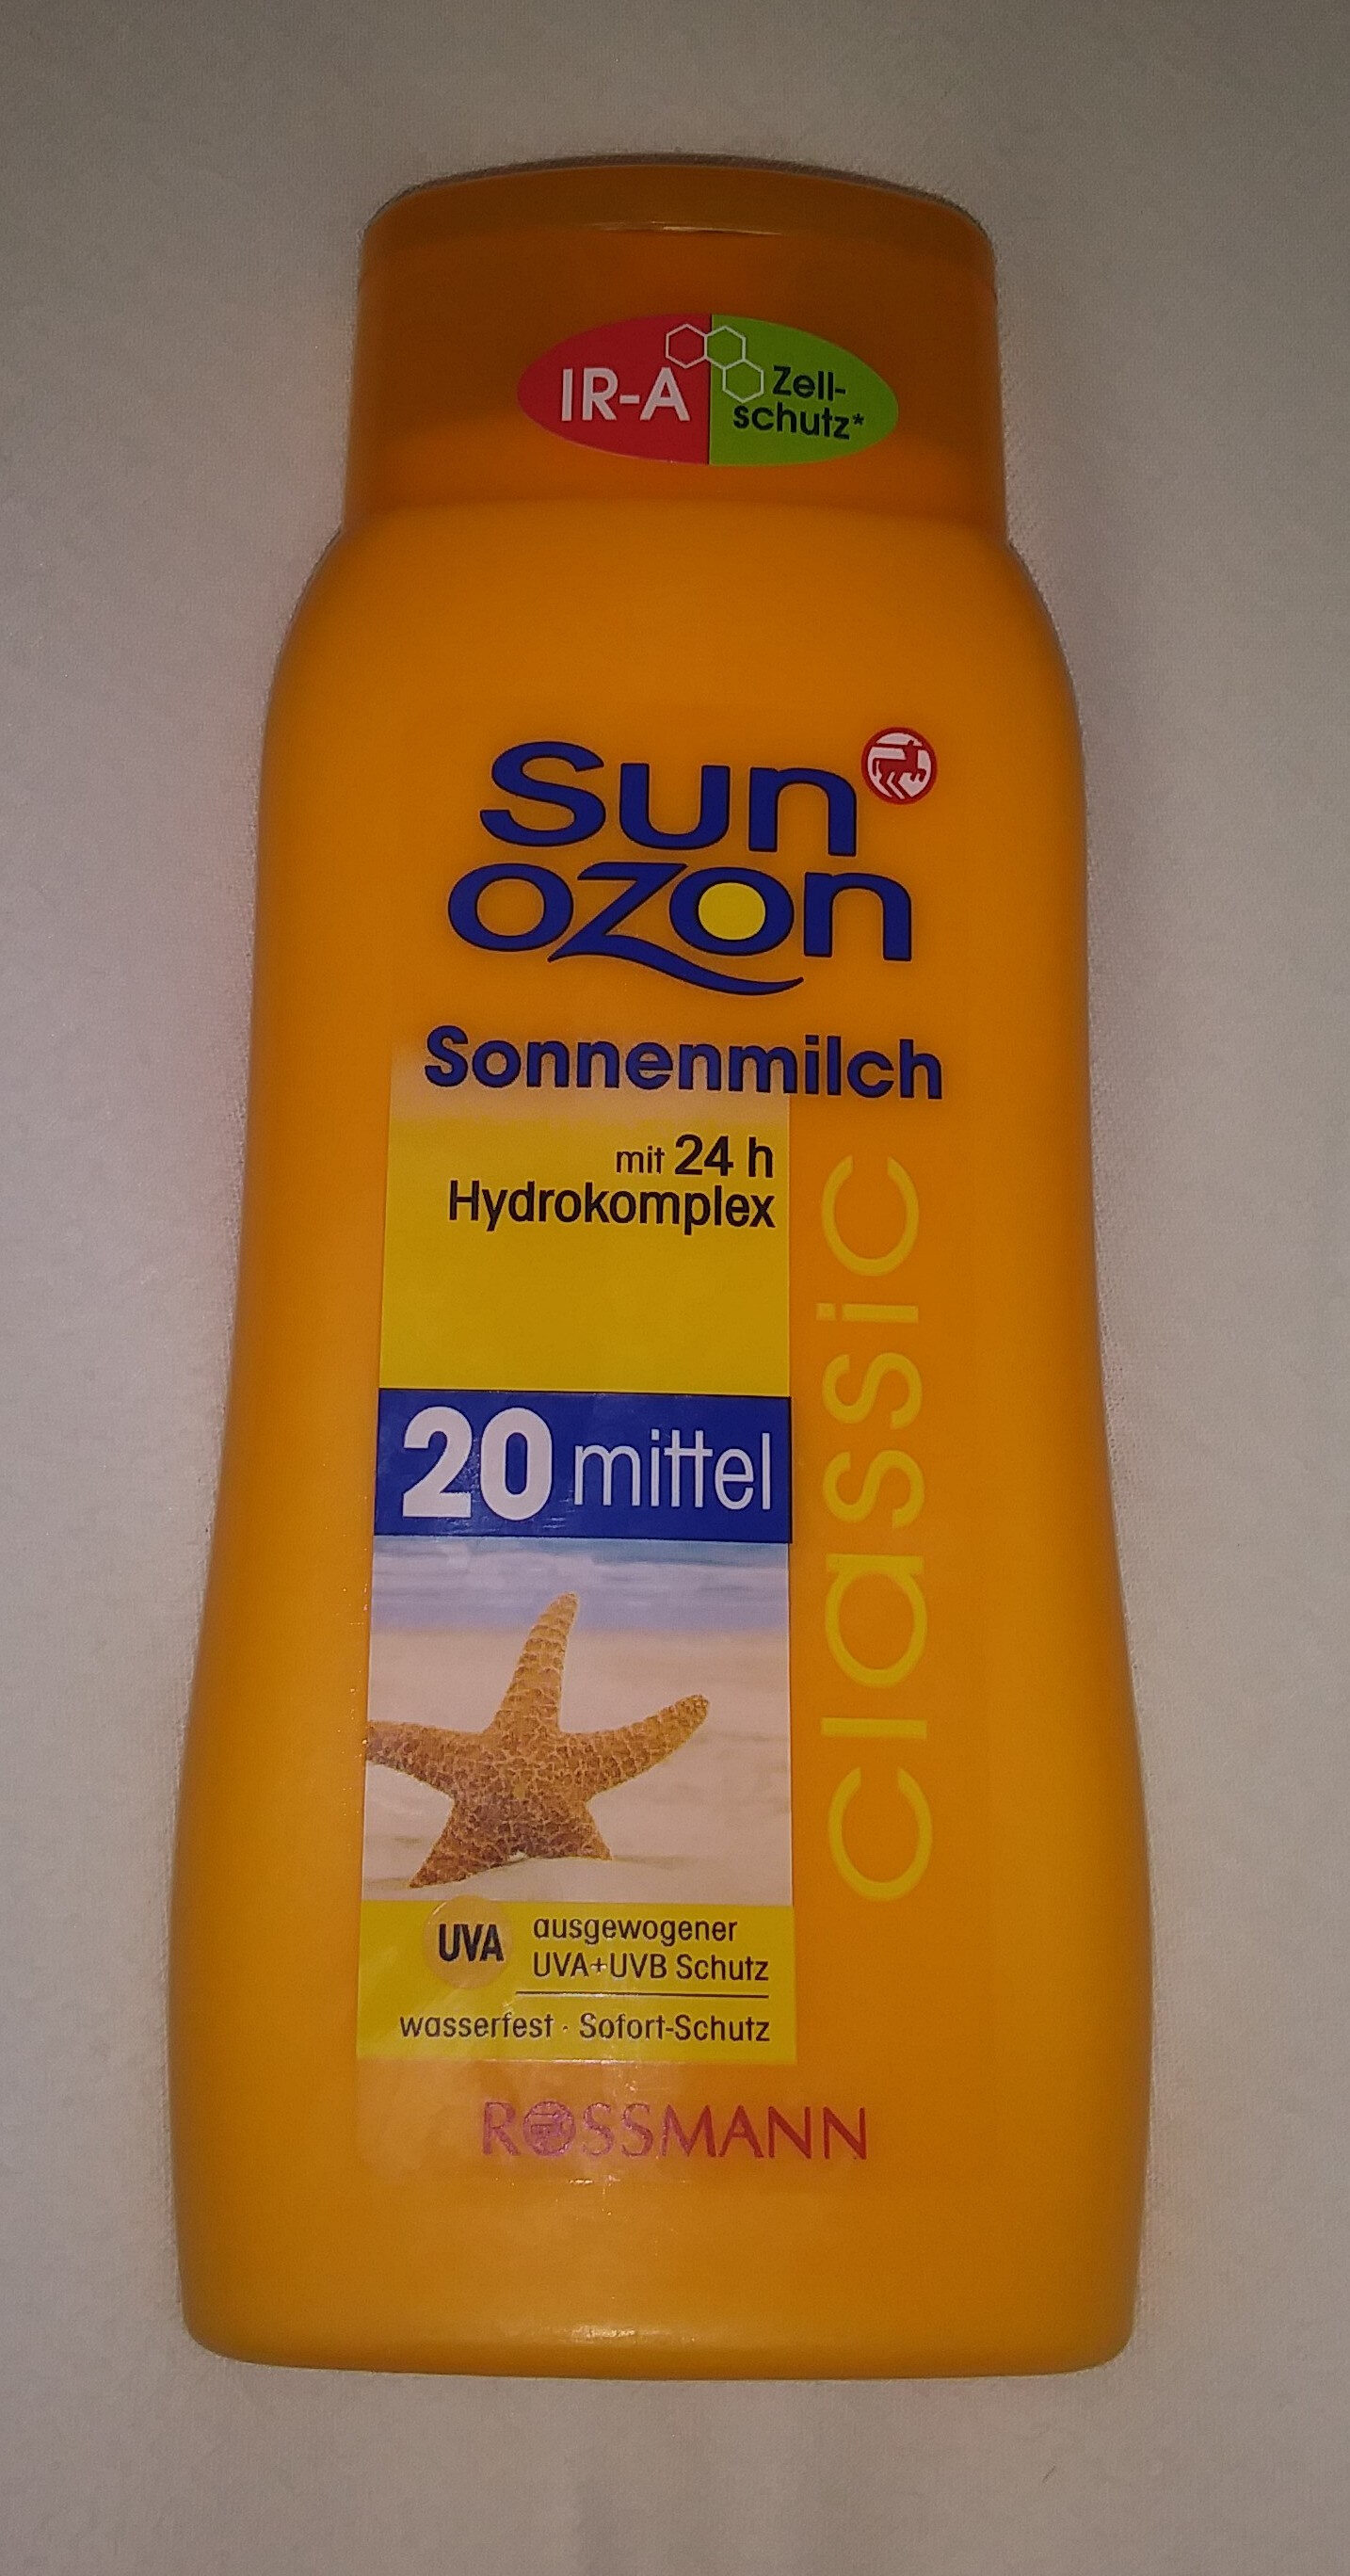 Sonnenmilch 20 mittel - Produkt - de